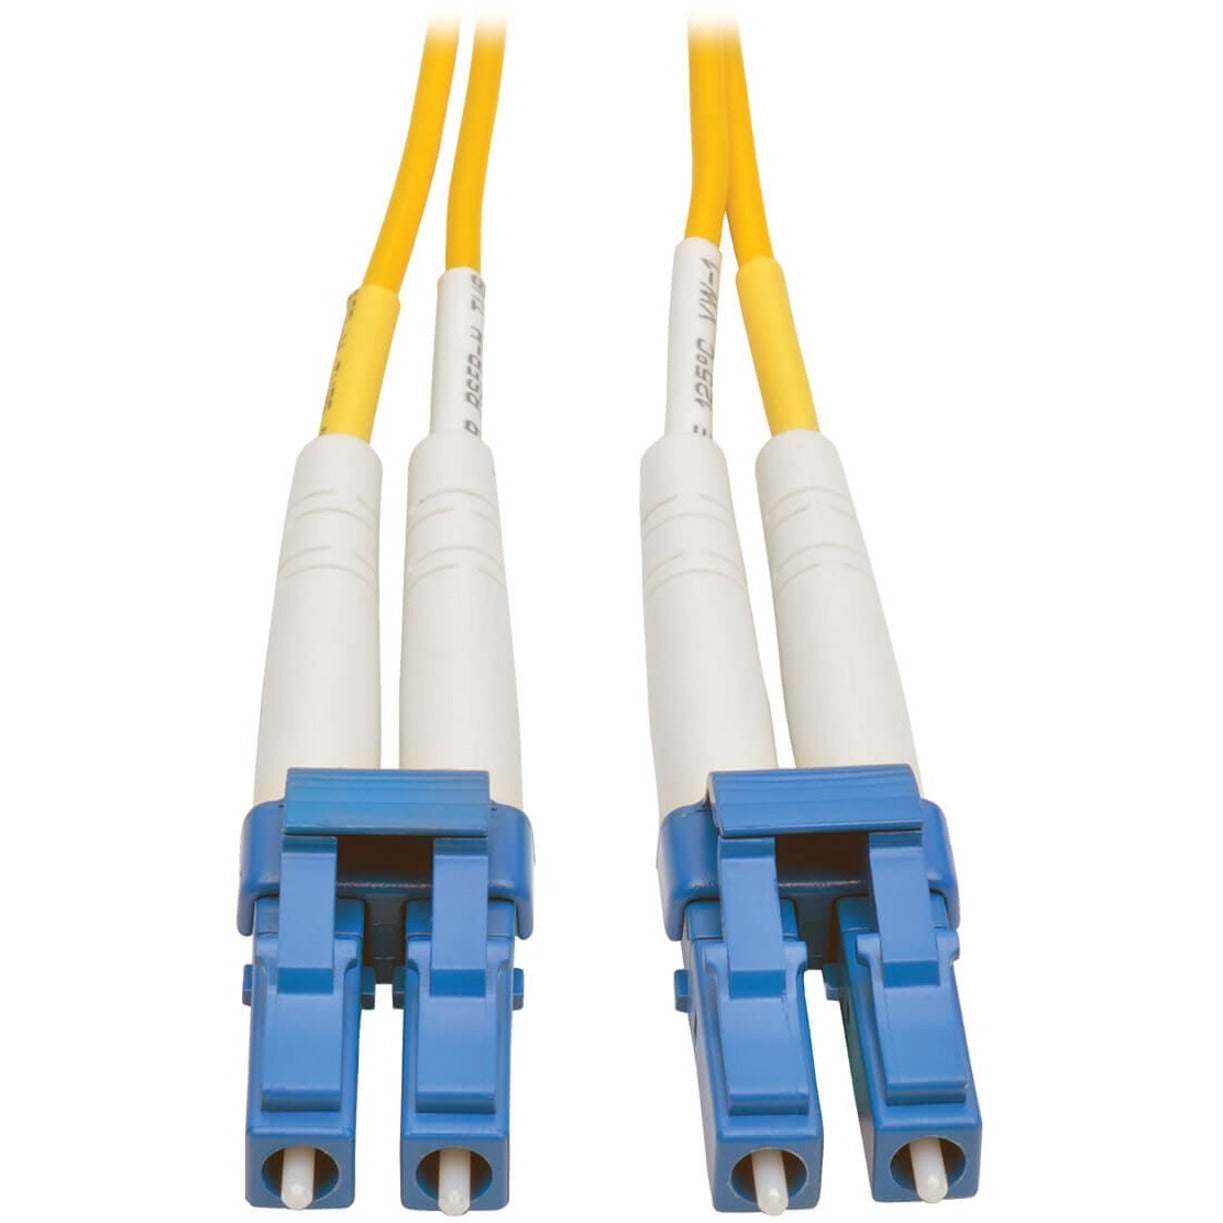 Tripp Lite N370-03M Fiber Optic Duplex Patch Cable, 10 ft, Yellow, Lifetime Warranty